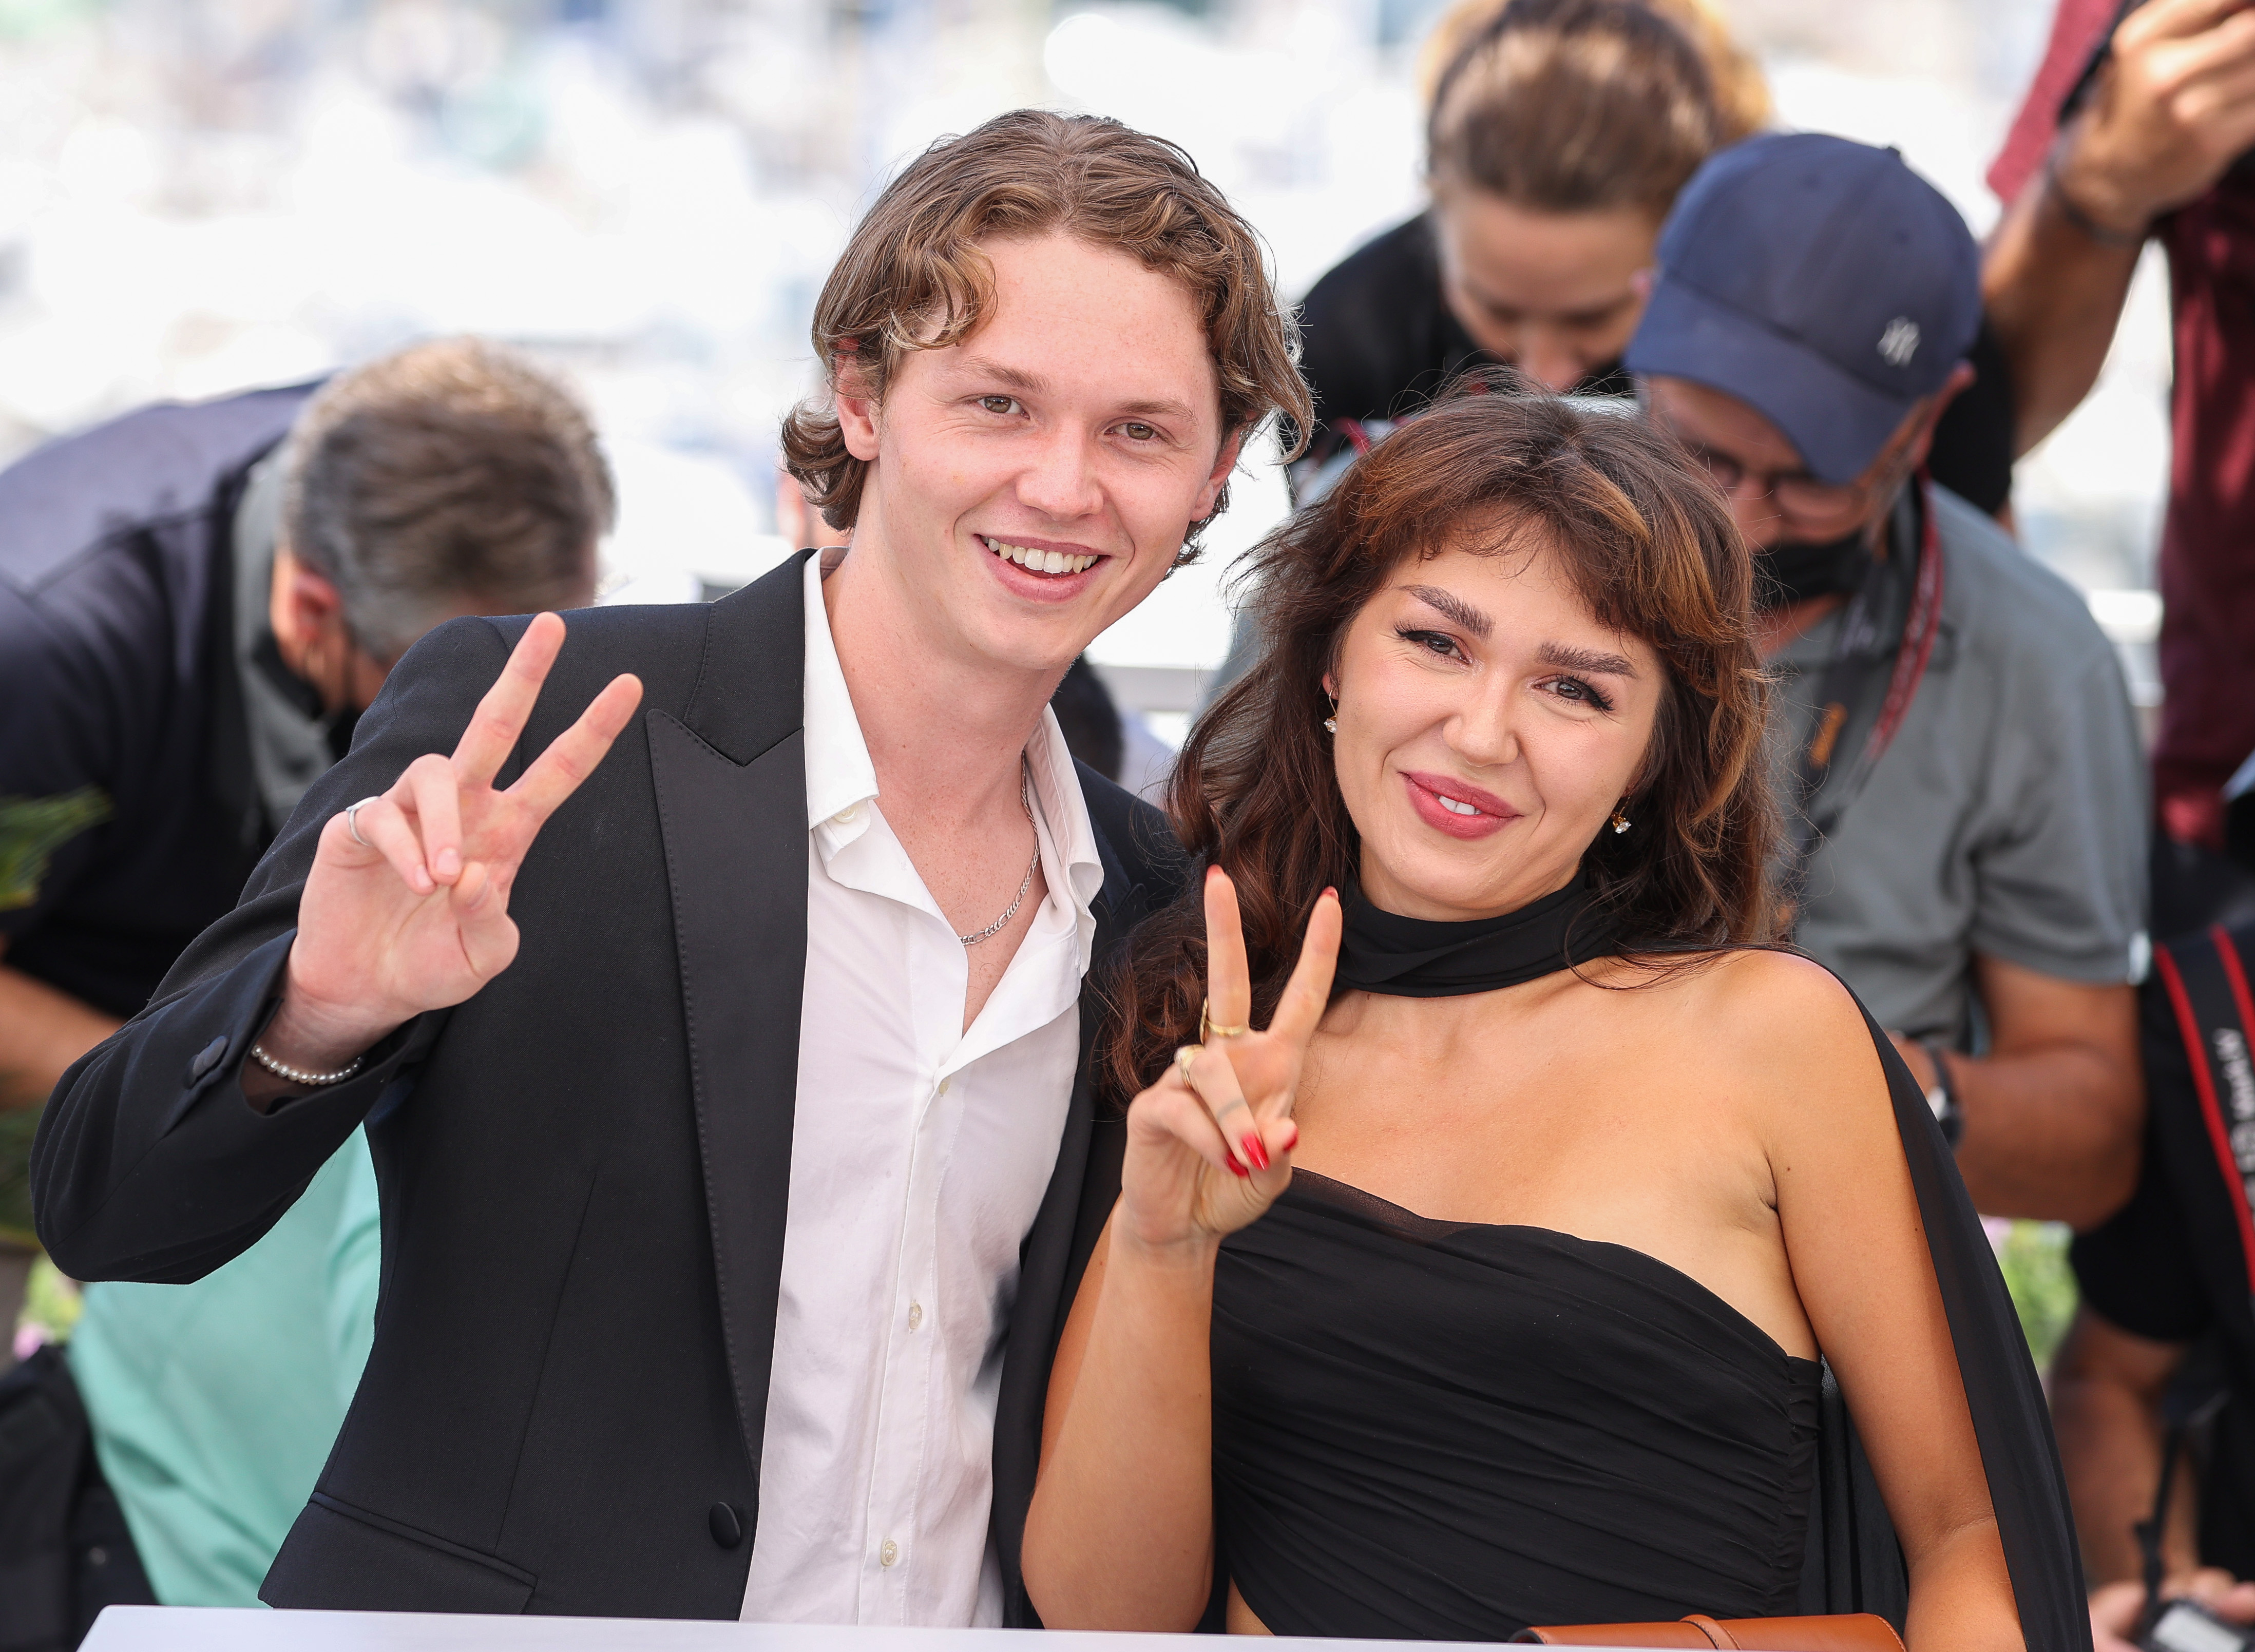 Jack et Mercedes Kilmer assistent au photocall de "Val" lors de la 74e édition du Festival de Cannes à Cannes, en France, le 7 juillet 2021. | Source : Getty Images